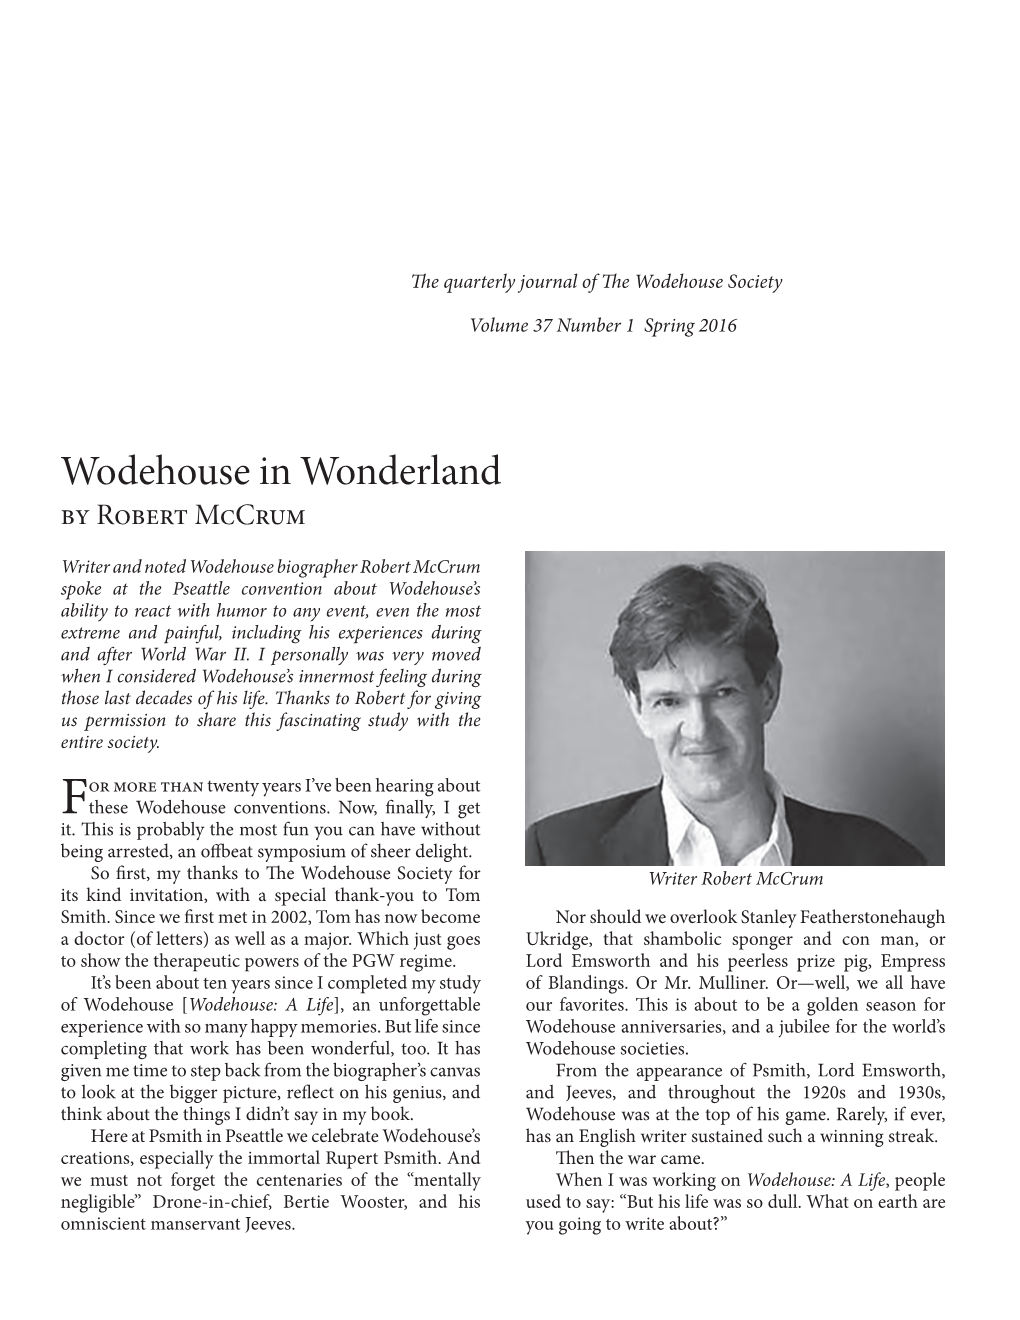 Wodehouse in Wonderland by Robert Mccrum